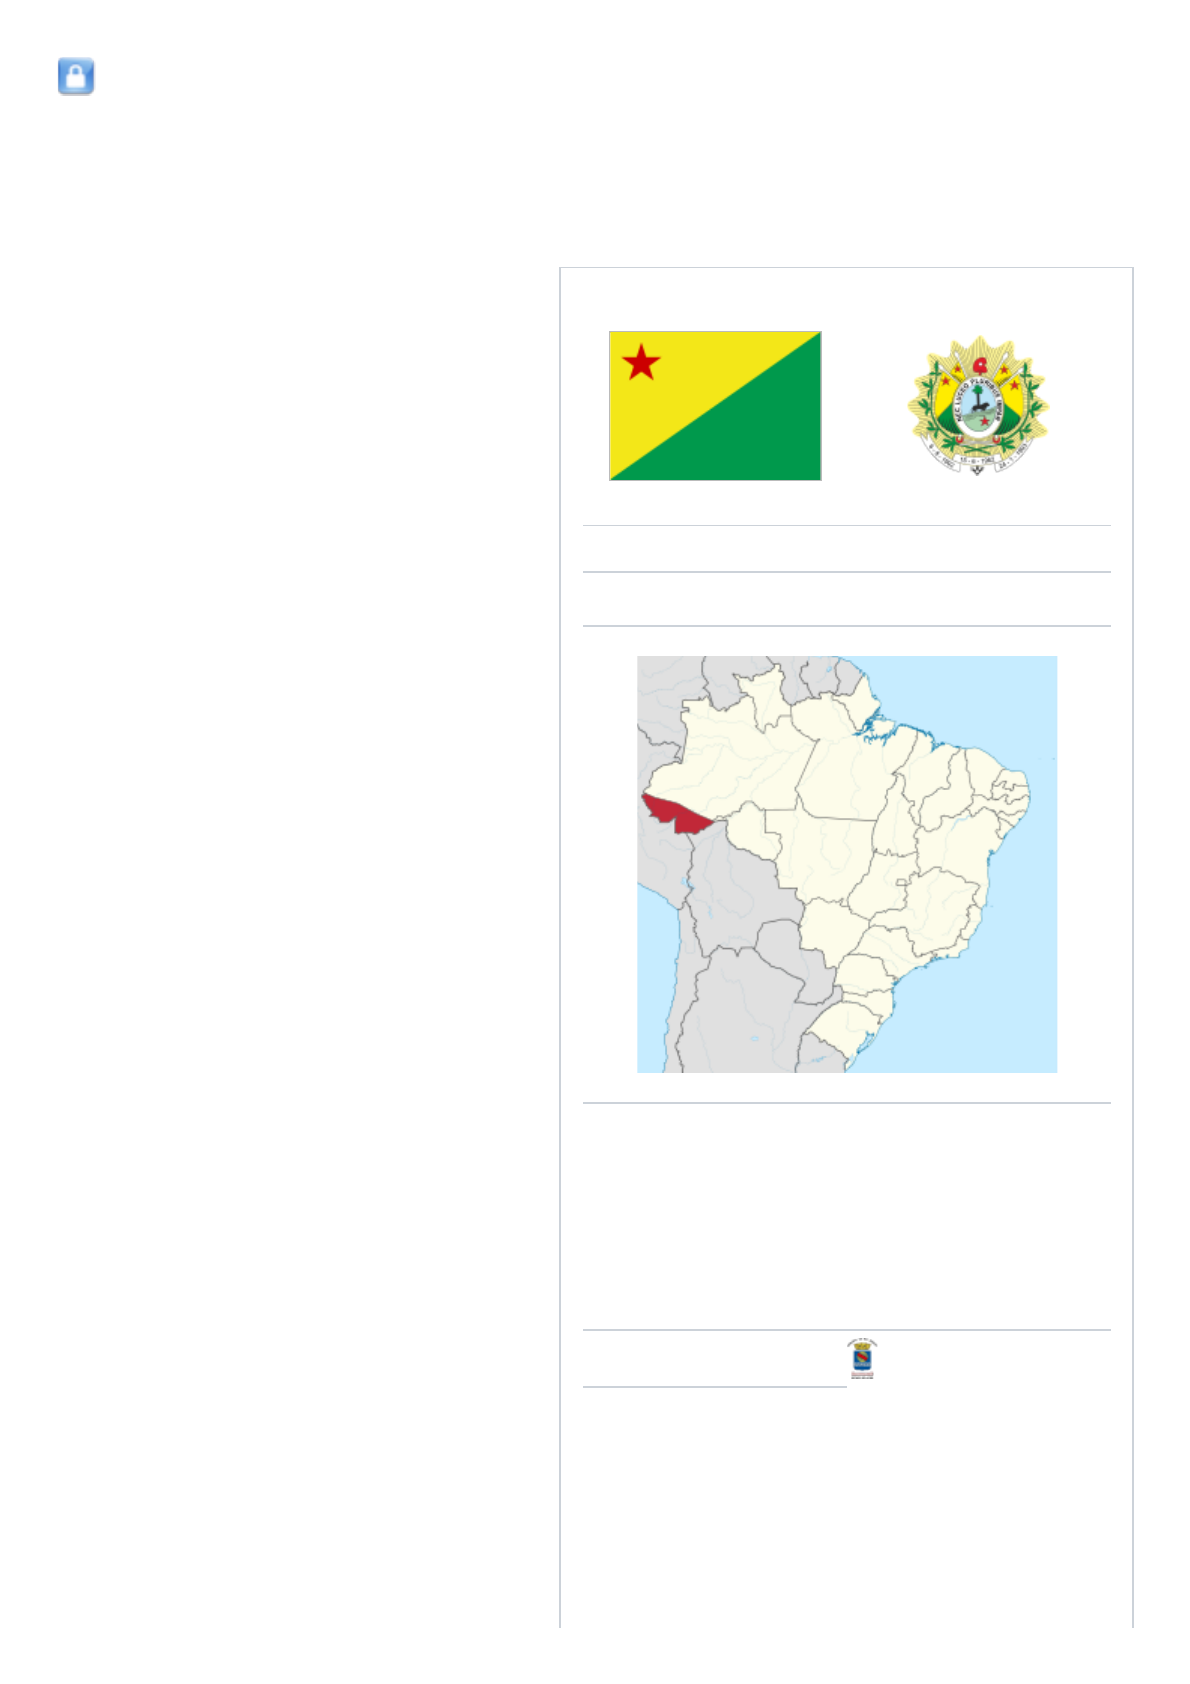 Fusos horários no Brasil – Wikipédia, a enciclopédia livre